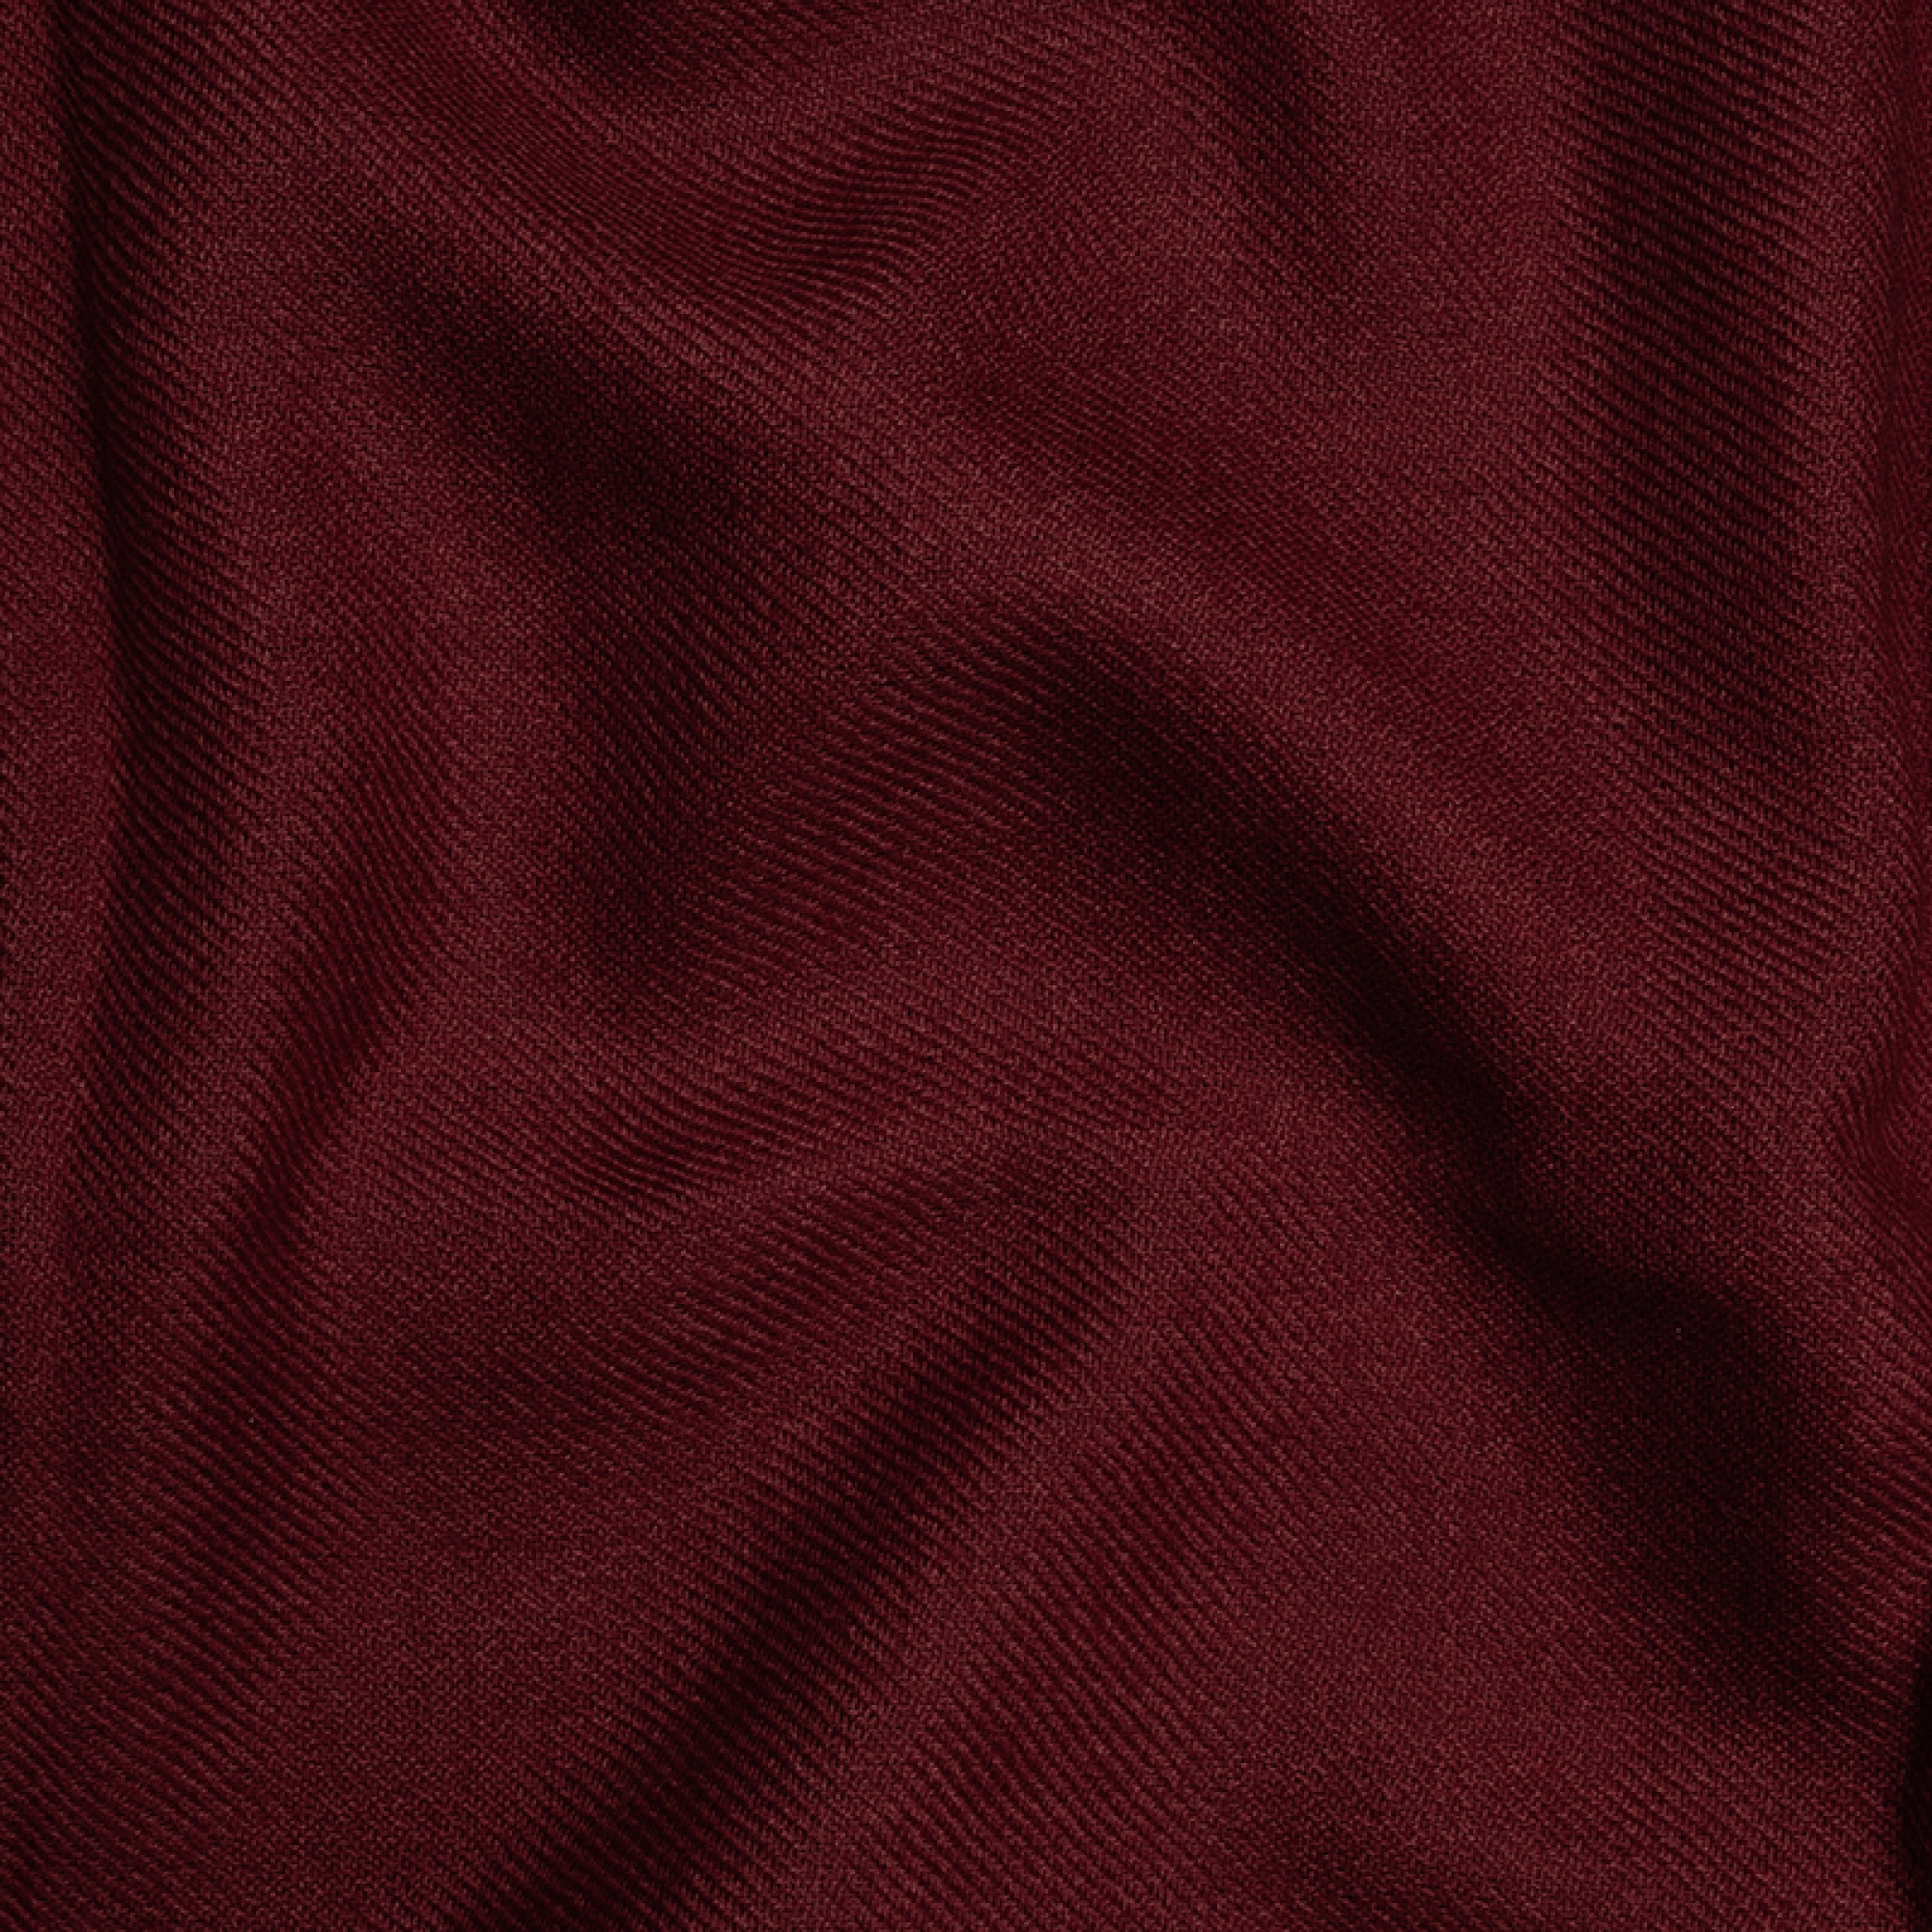 Cashmere accessori toodoo plain xl 240 x 260 rosso rame profondo 240 x 260 cm